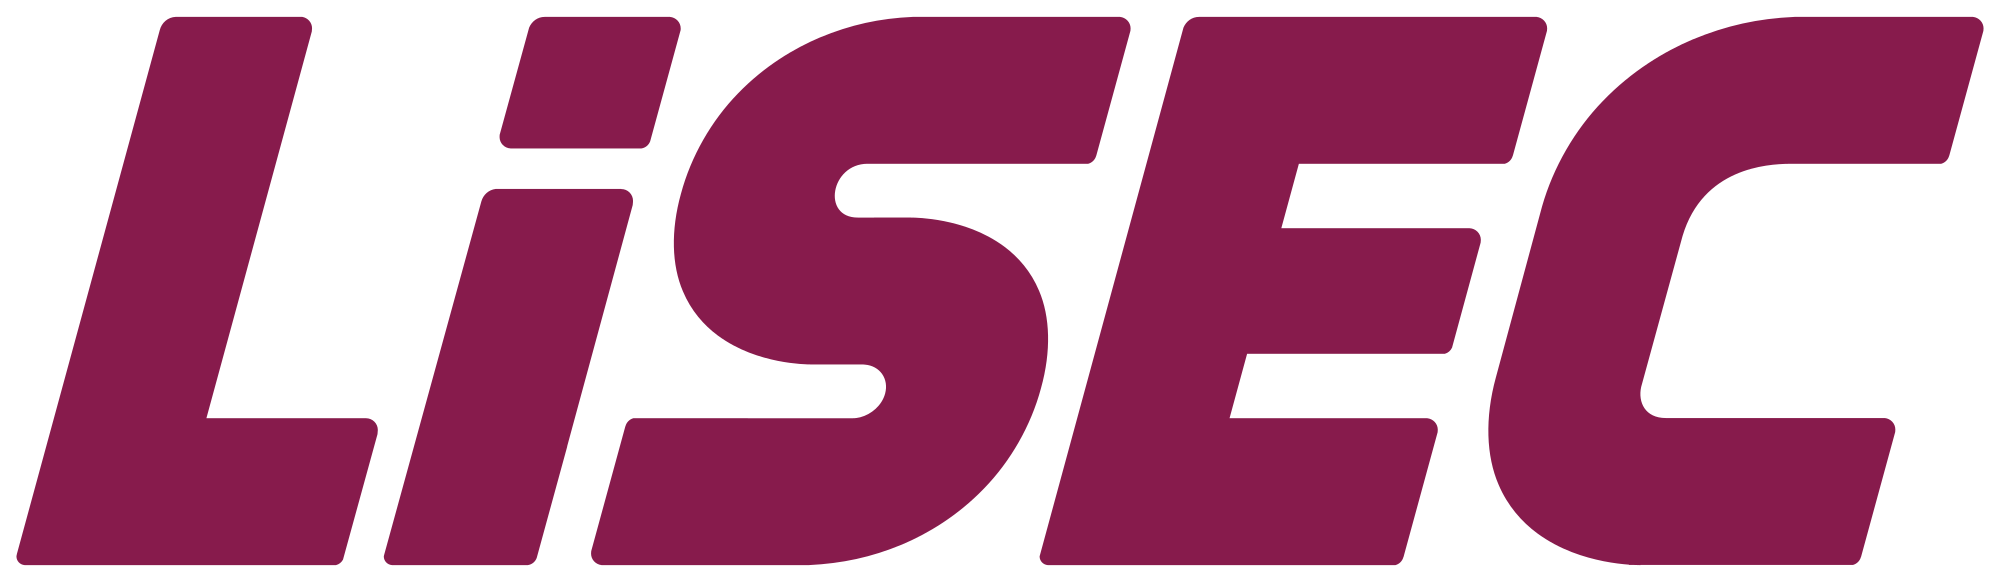 LiSEC_logo